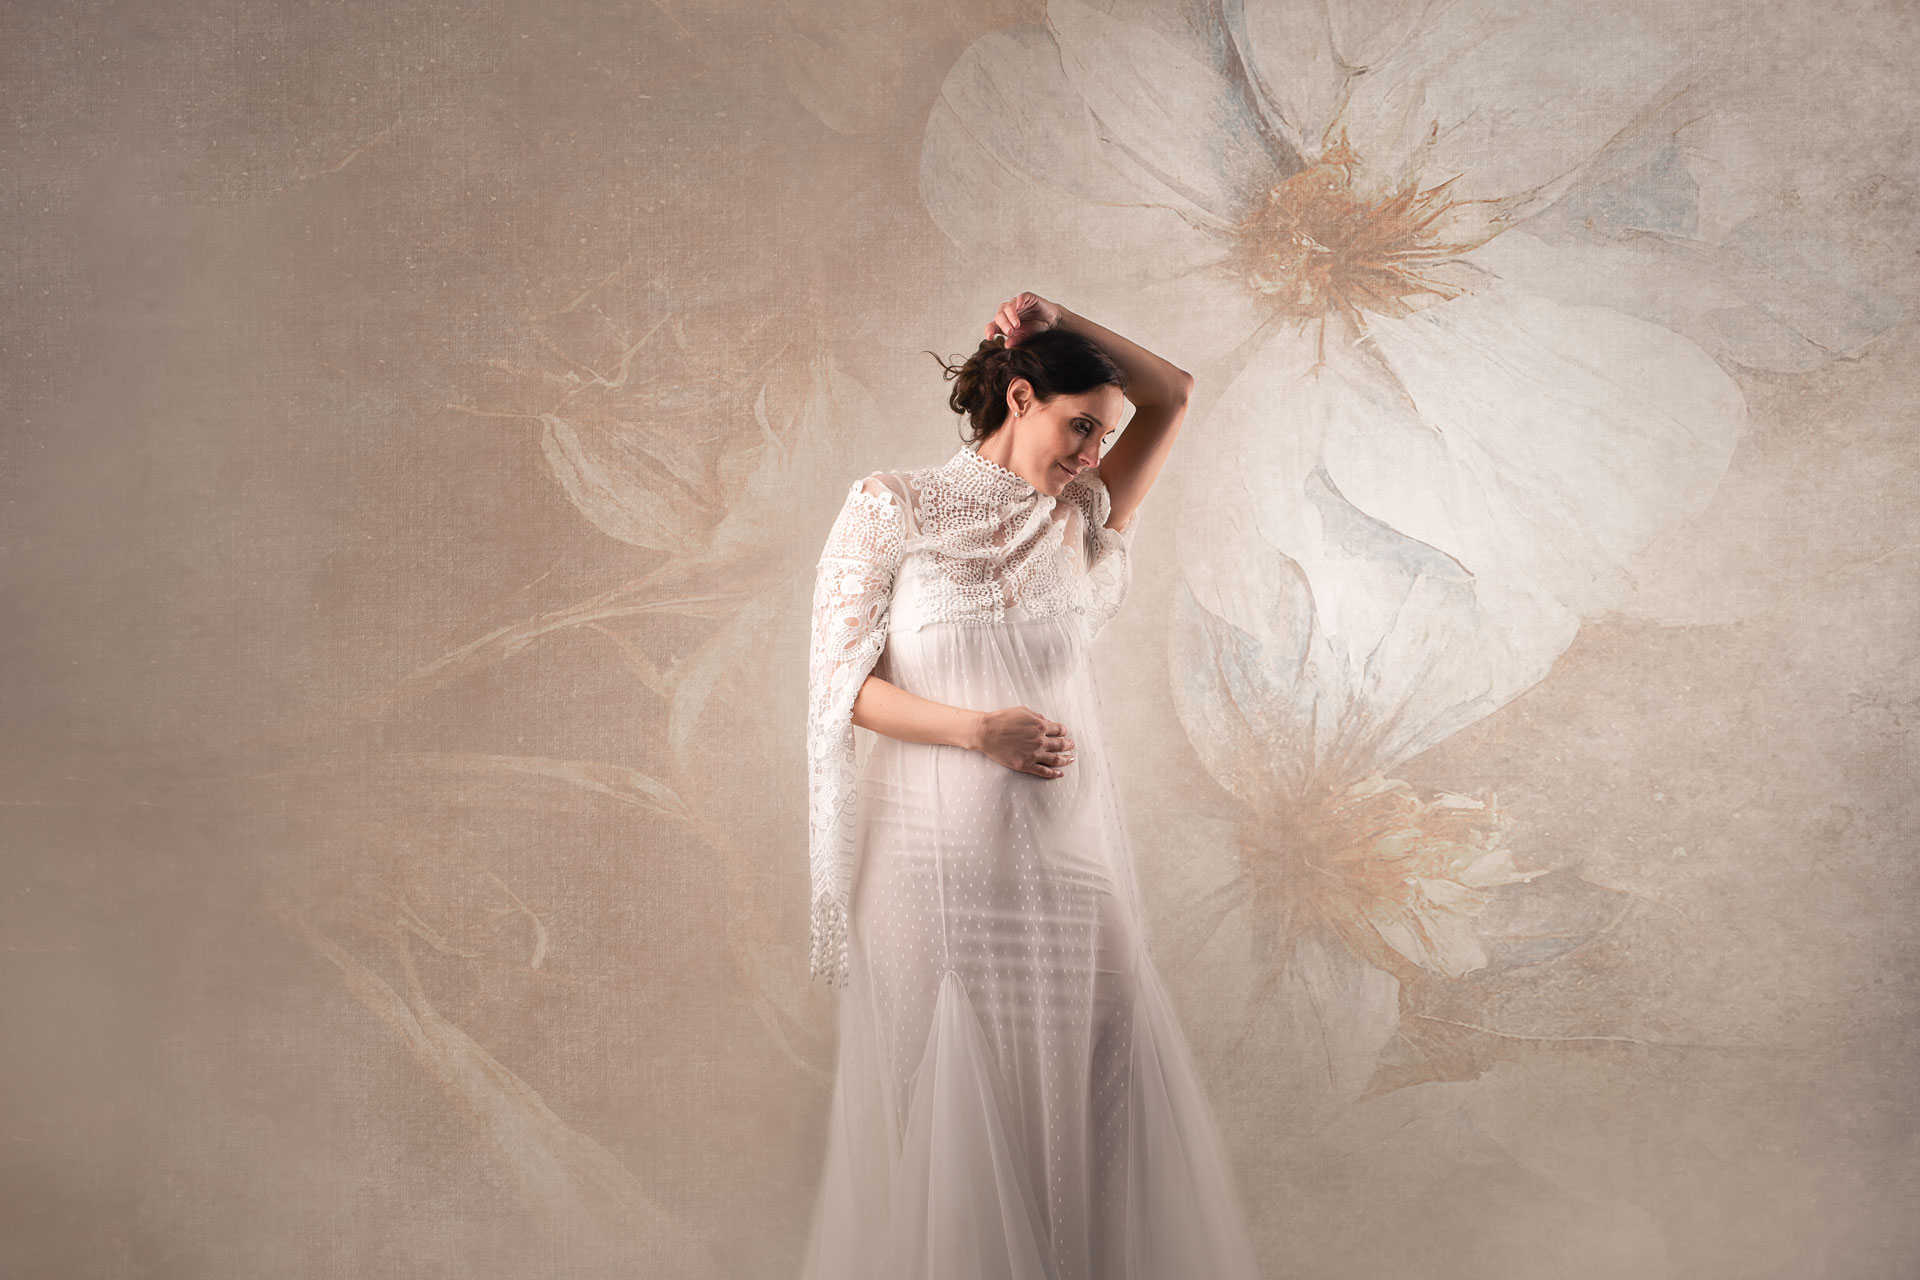 Babybauchfoto im Studio im weißen Kleid vor blumigem Hintergrund